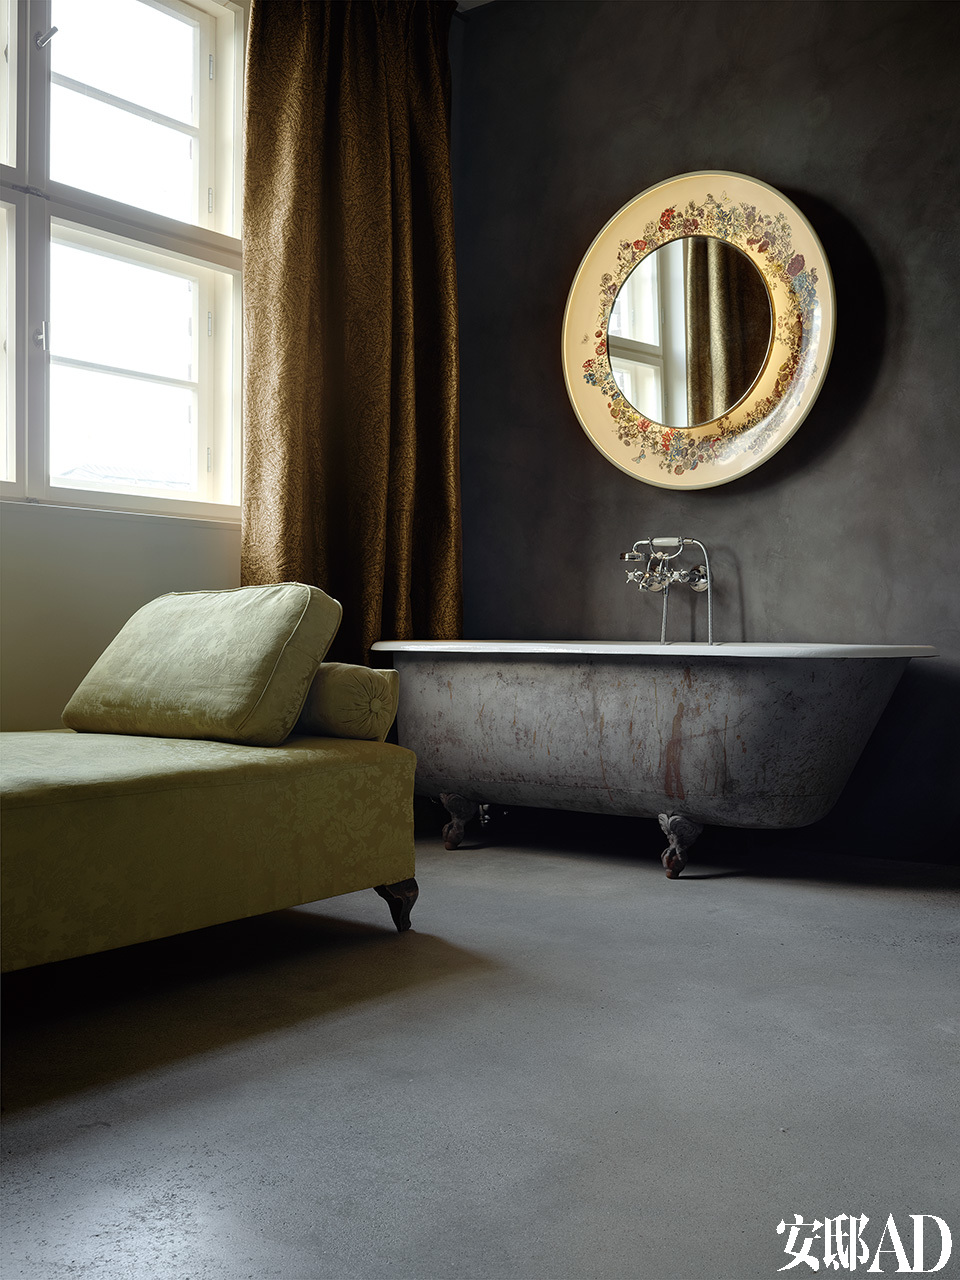 在Loft里将卧室和浴室结合起来，浴盆和两用卧床均出自1900年法国设计师之手。镜子是由Piero Fornasetti设计的复古风格家具。窗帘的绸缎来自Rubelli。浴缸周身漆黑，一天劳累之后这里是最理想的放松环境。